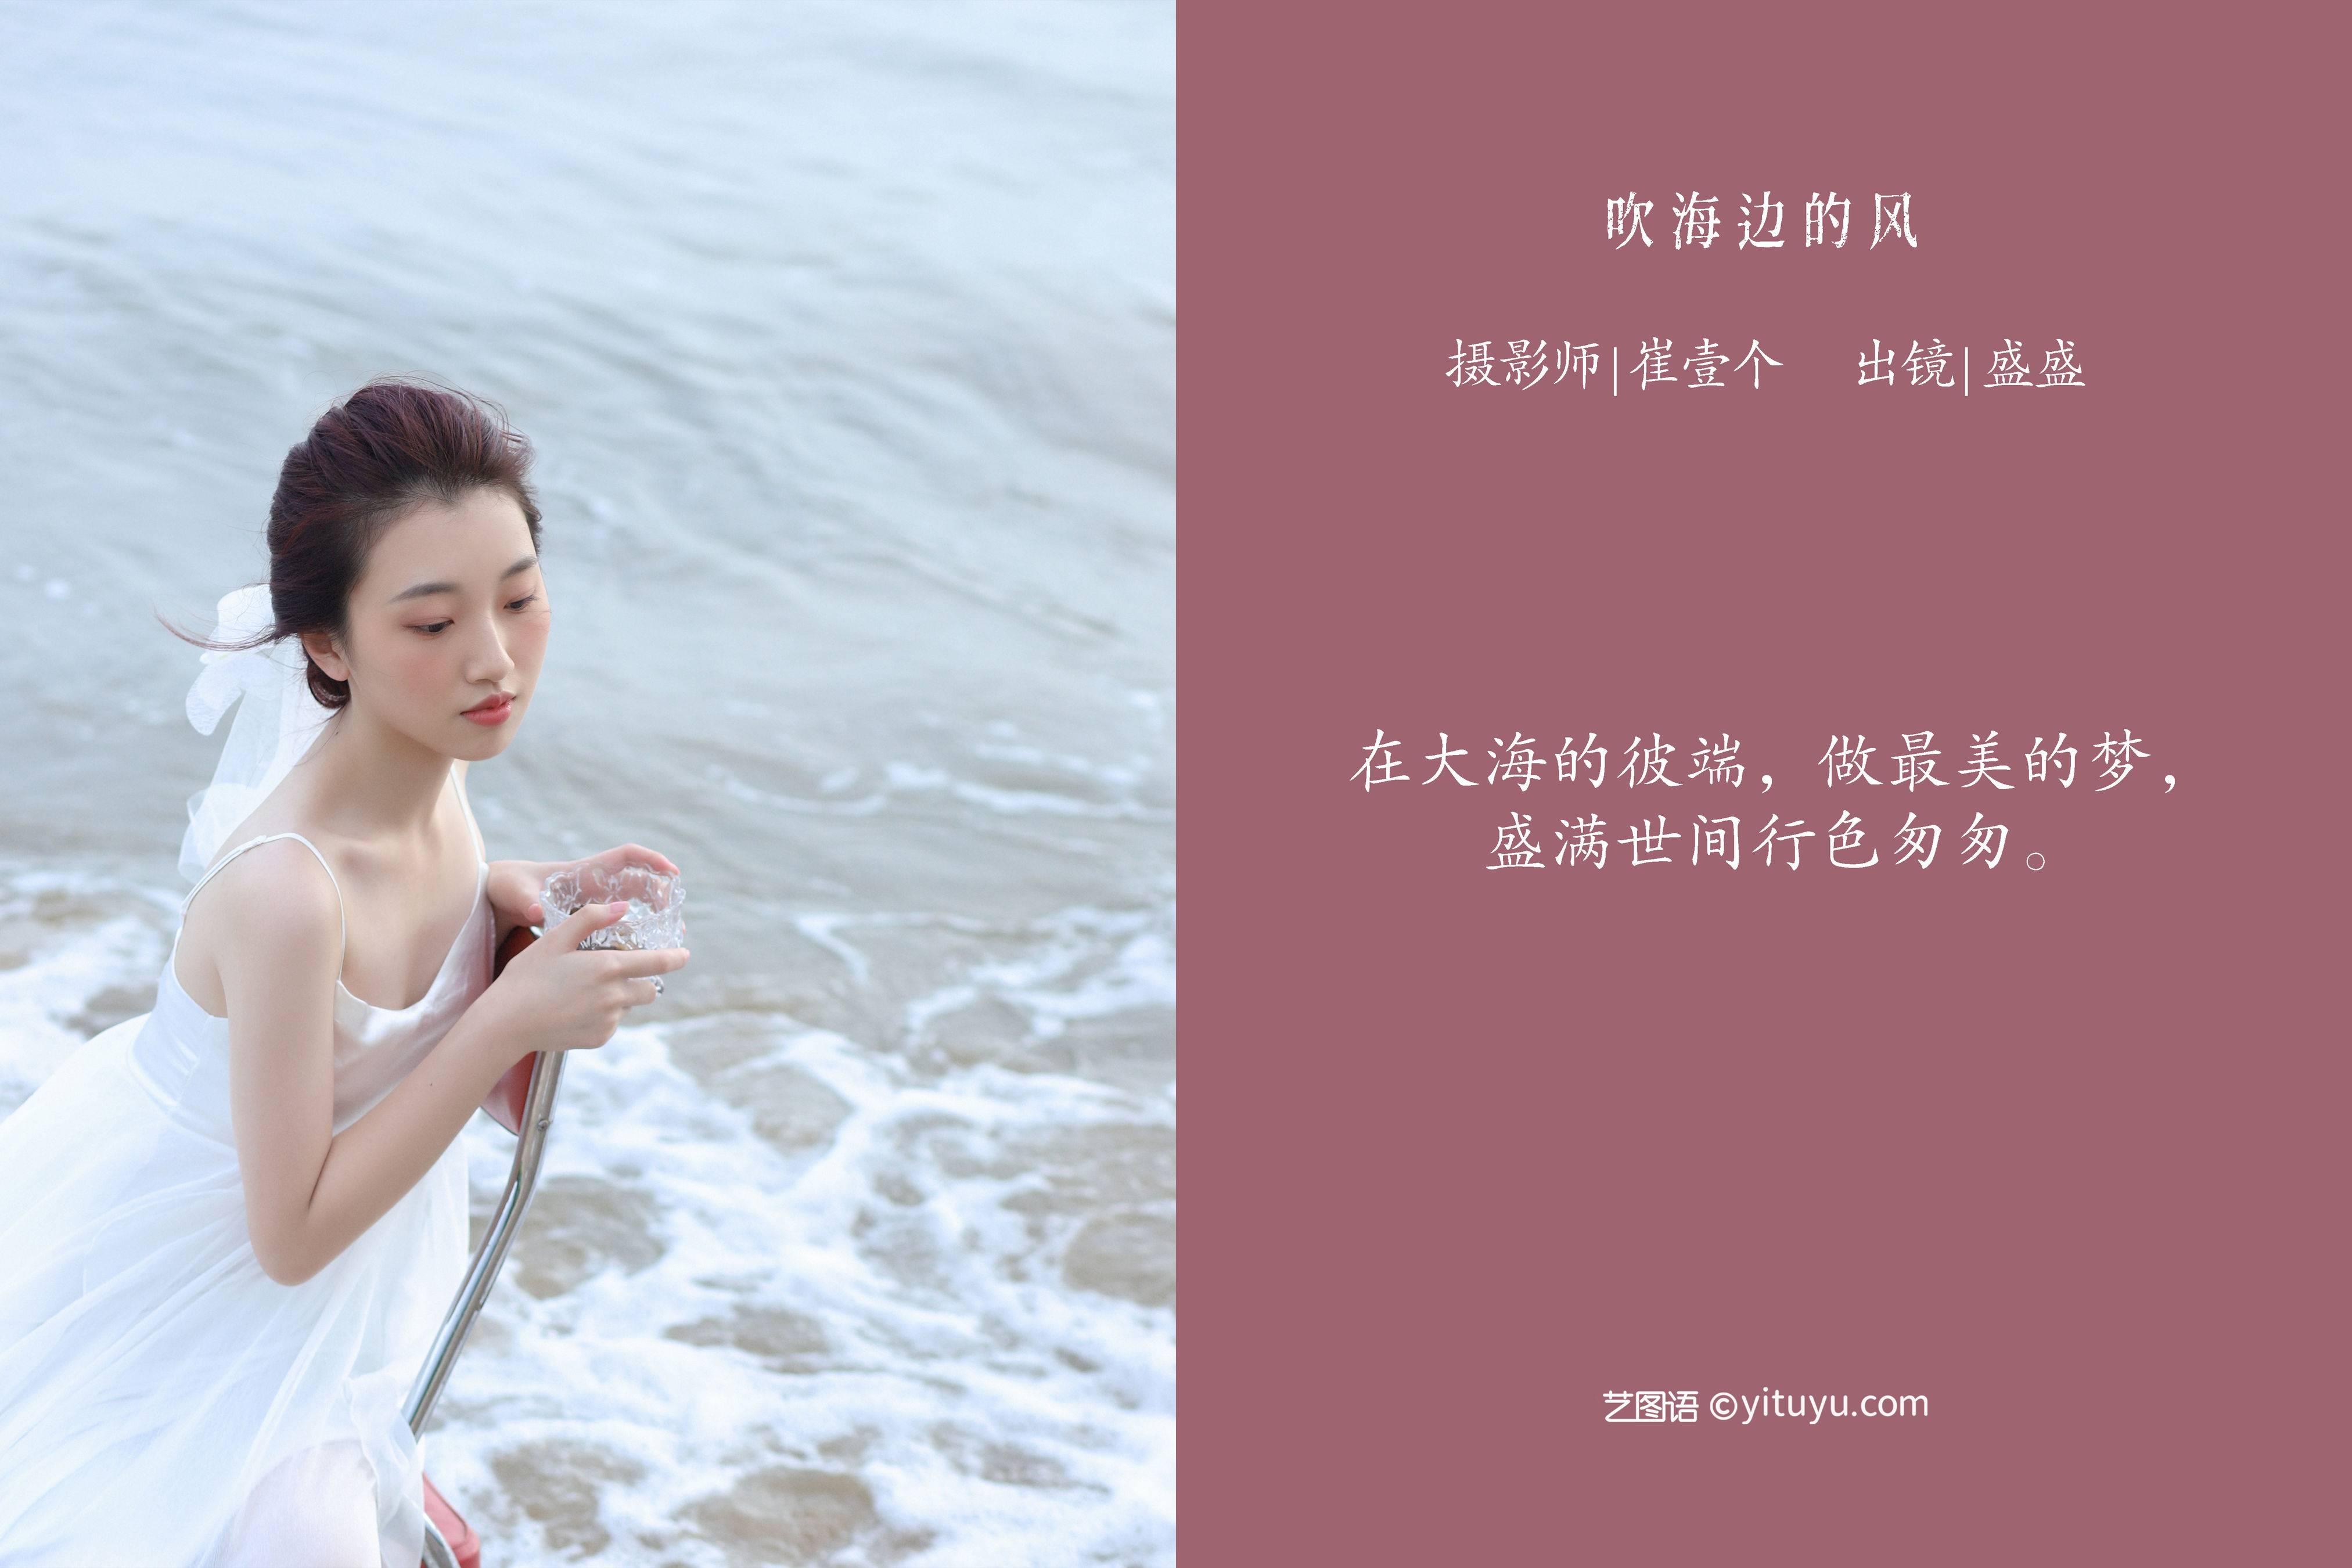 吹海边的风 漂亮 优美 人像 摄影作品&YiTuYu艺图语-2